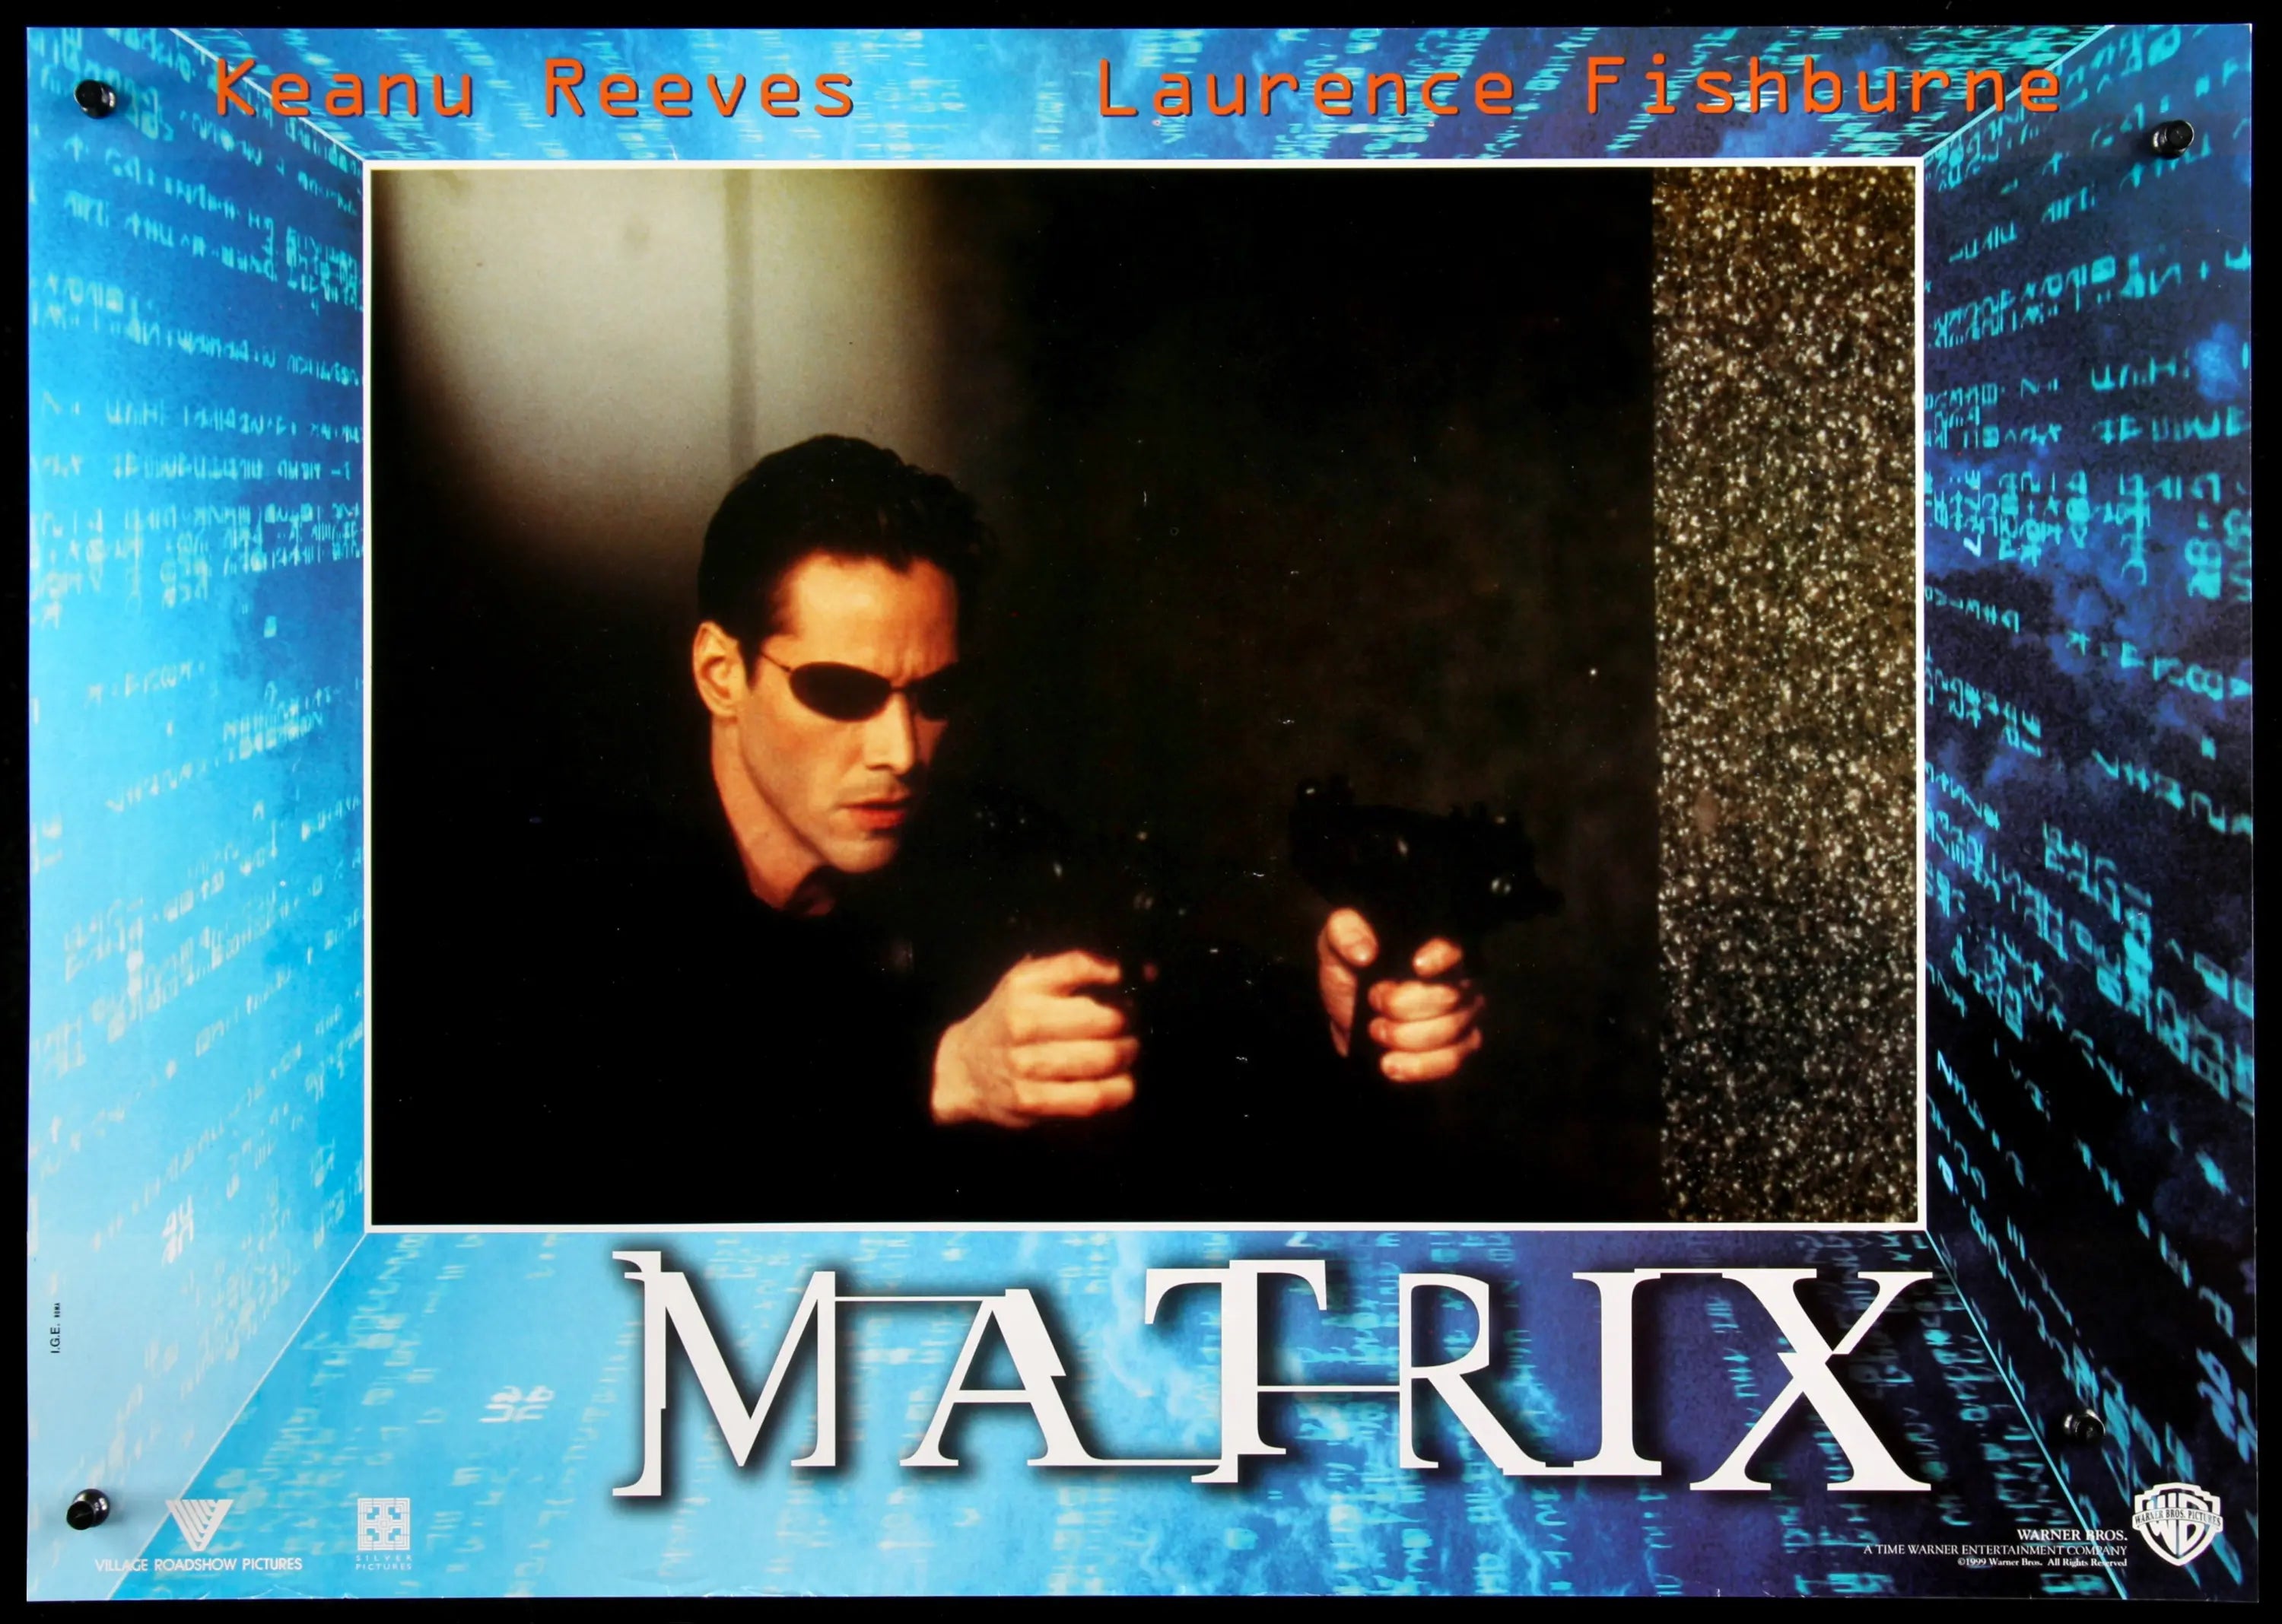 the matrix original poster